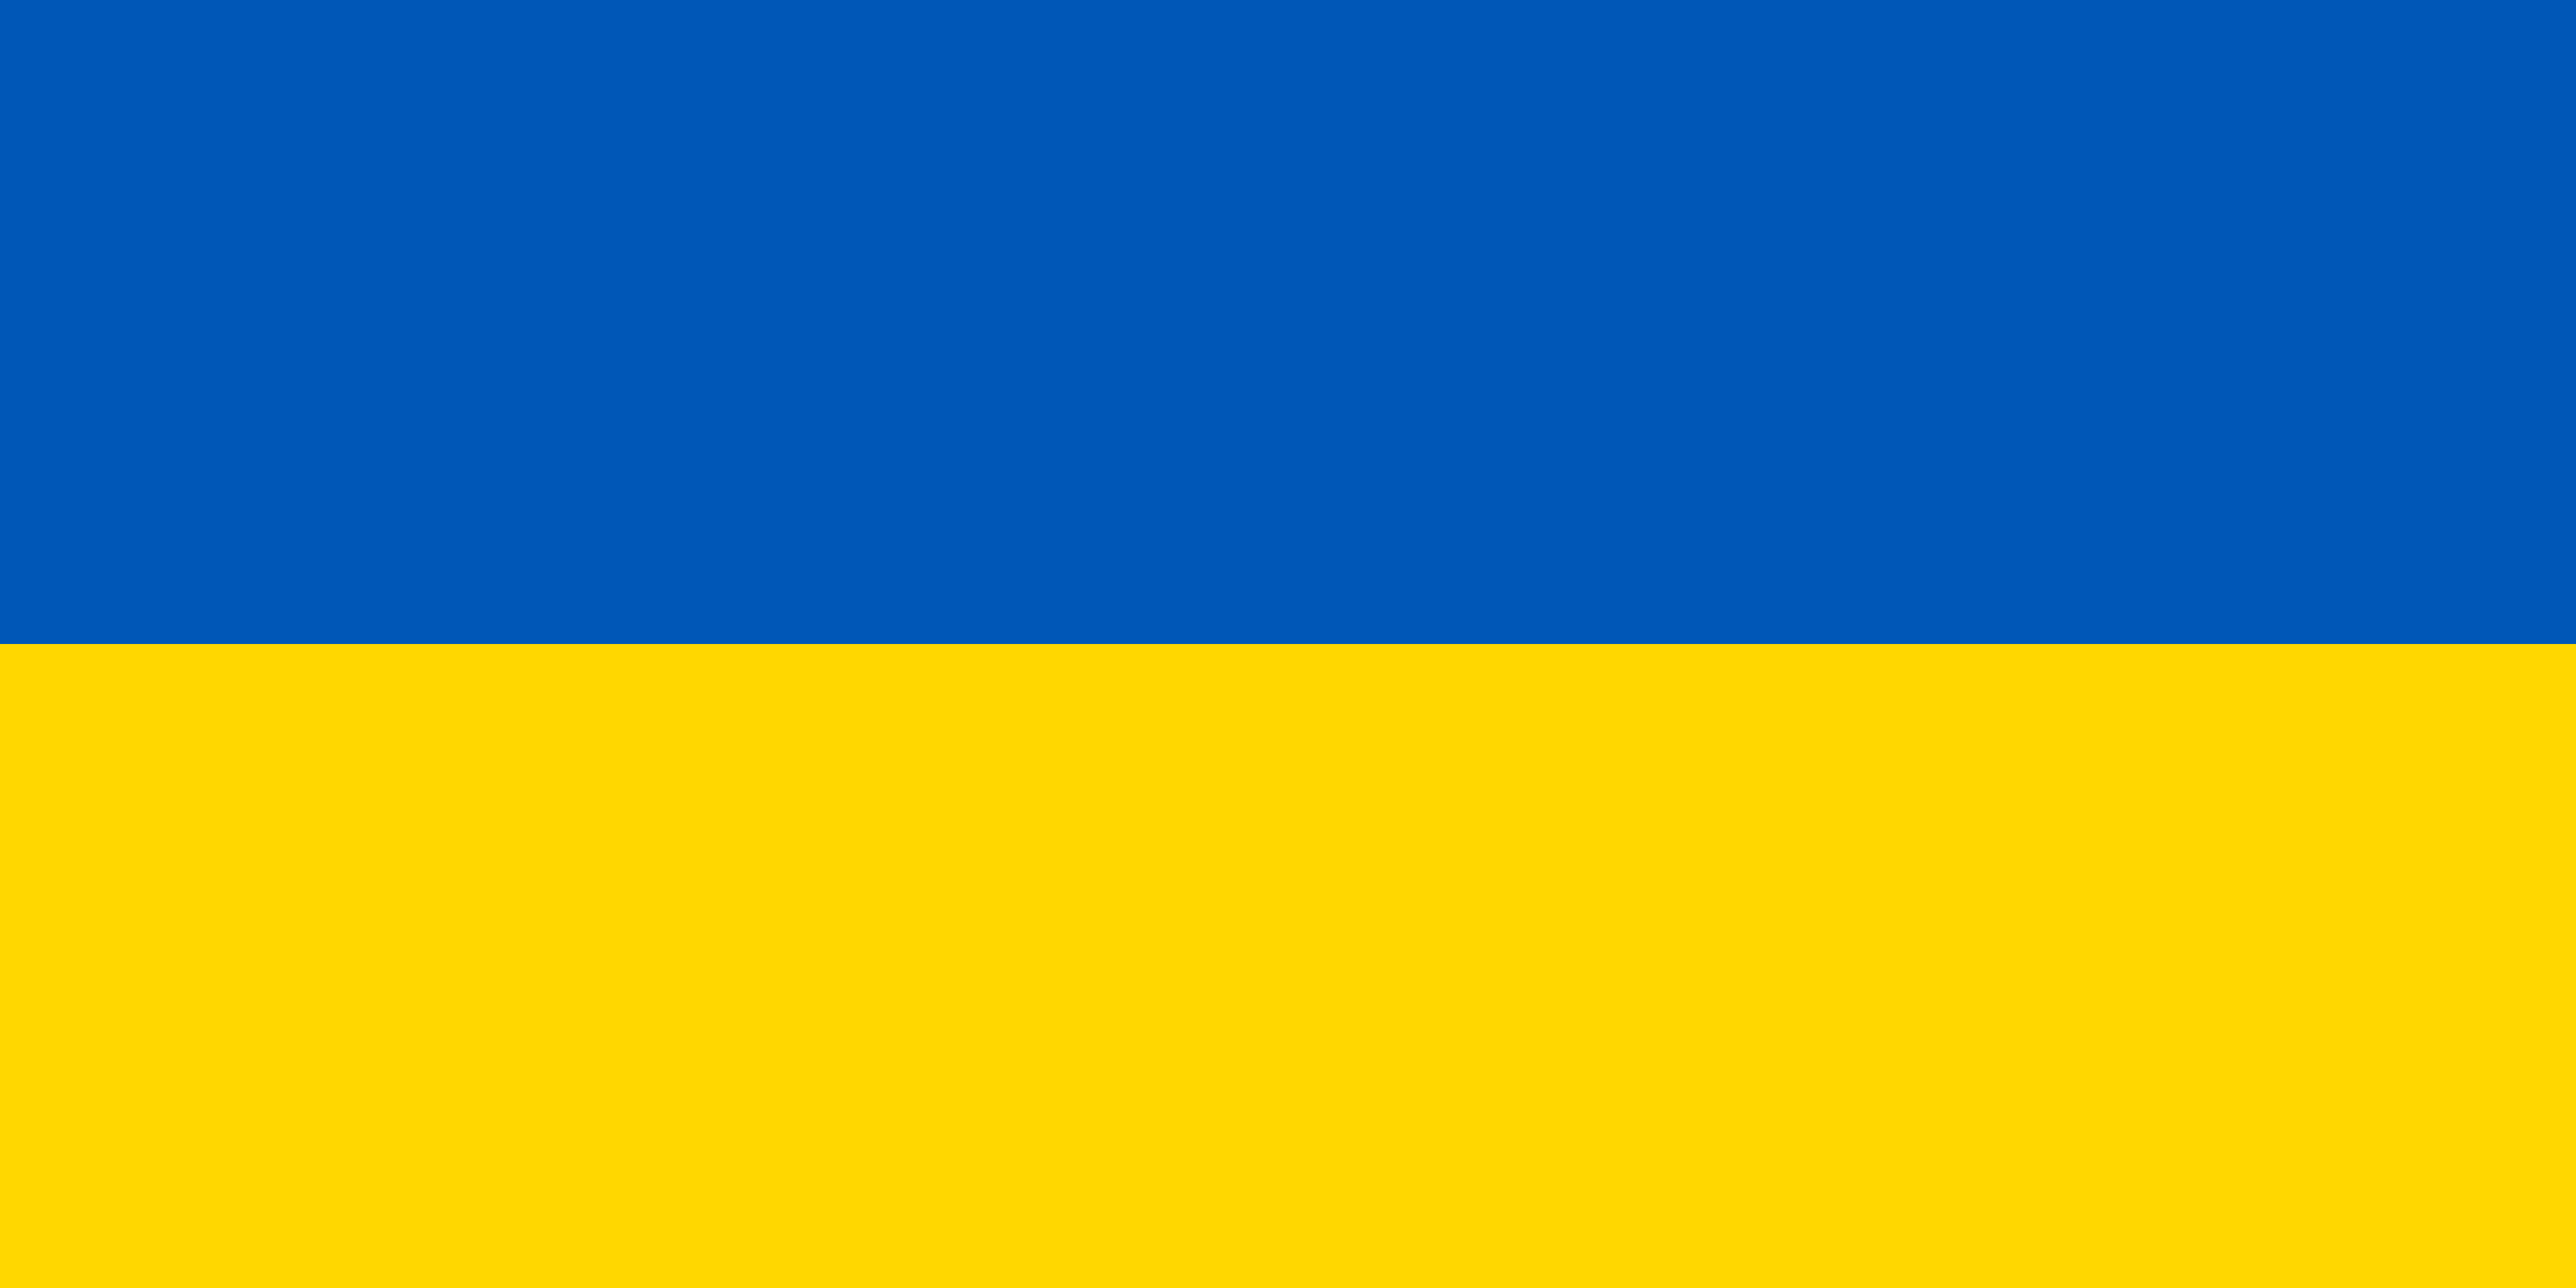 Das Bild zeigt das Blau und Gelb der ukrainischen Flagge